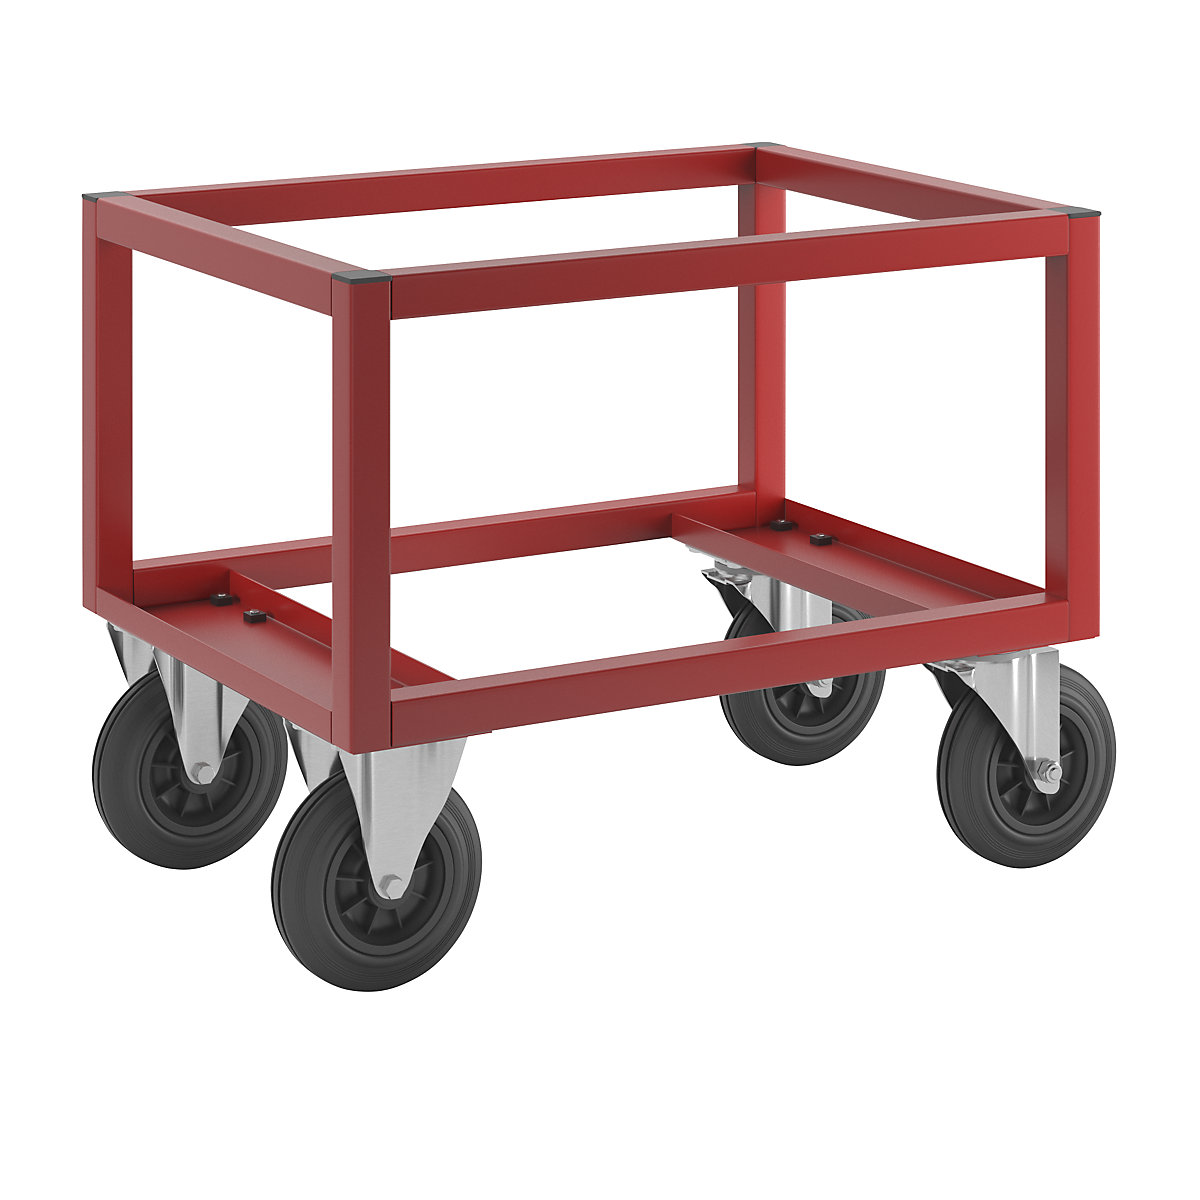 Transportni voziček za palete KM221 – Kongamek, DxŠxV 800 x 600 x 650 mm, rdeče barve, 2 vrtljivi in 2 fiksni kolesi-1